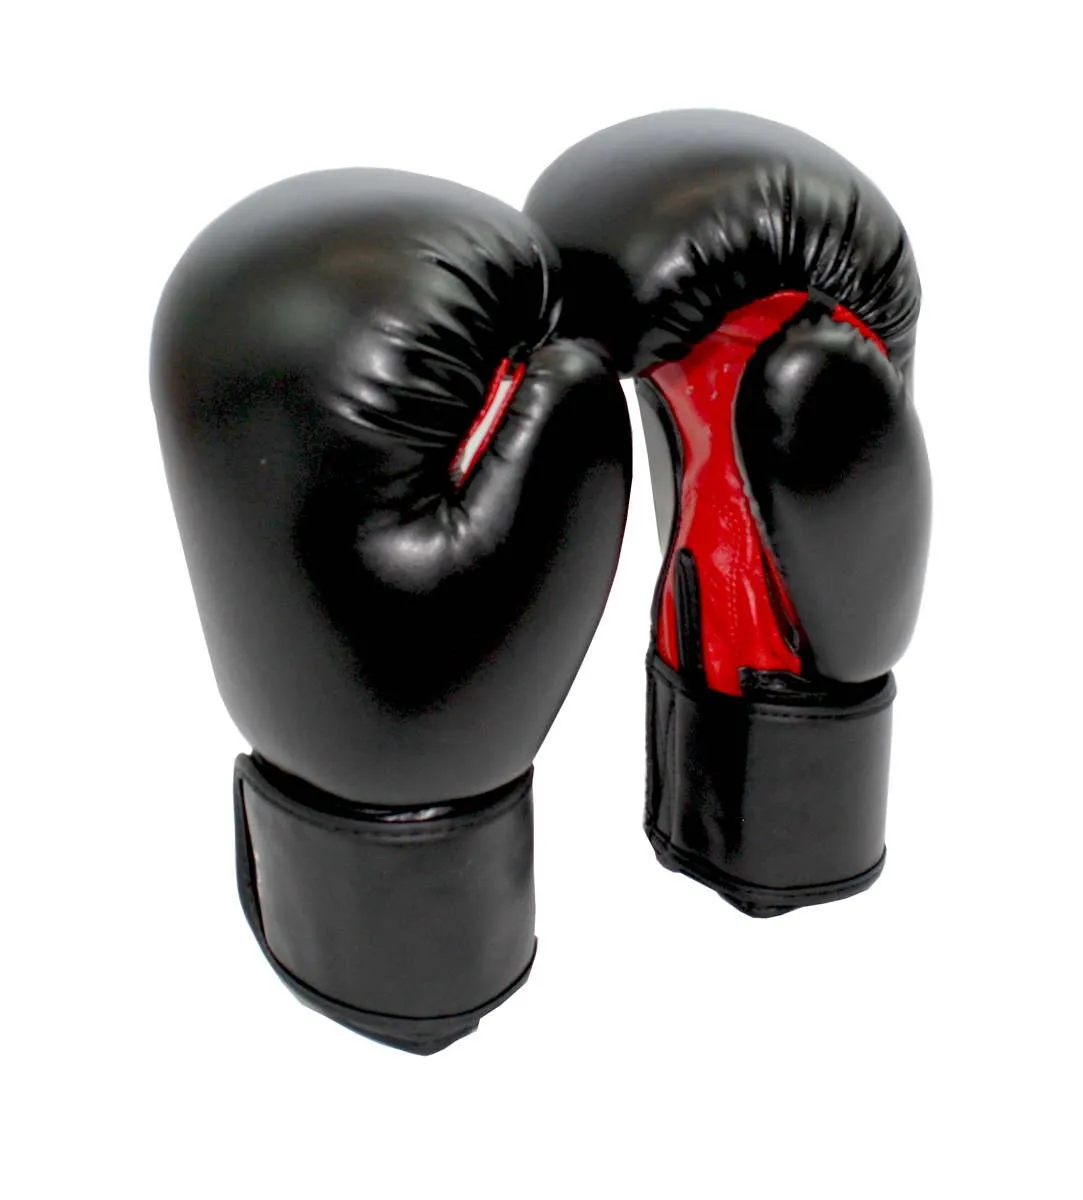 Boxhandschuhe Sparring schwarz rot Kunstleder mit Klettverschluss